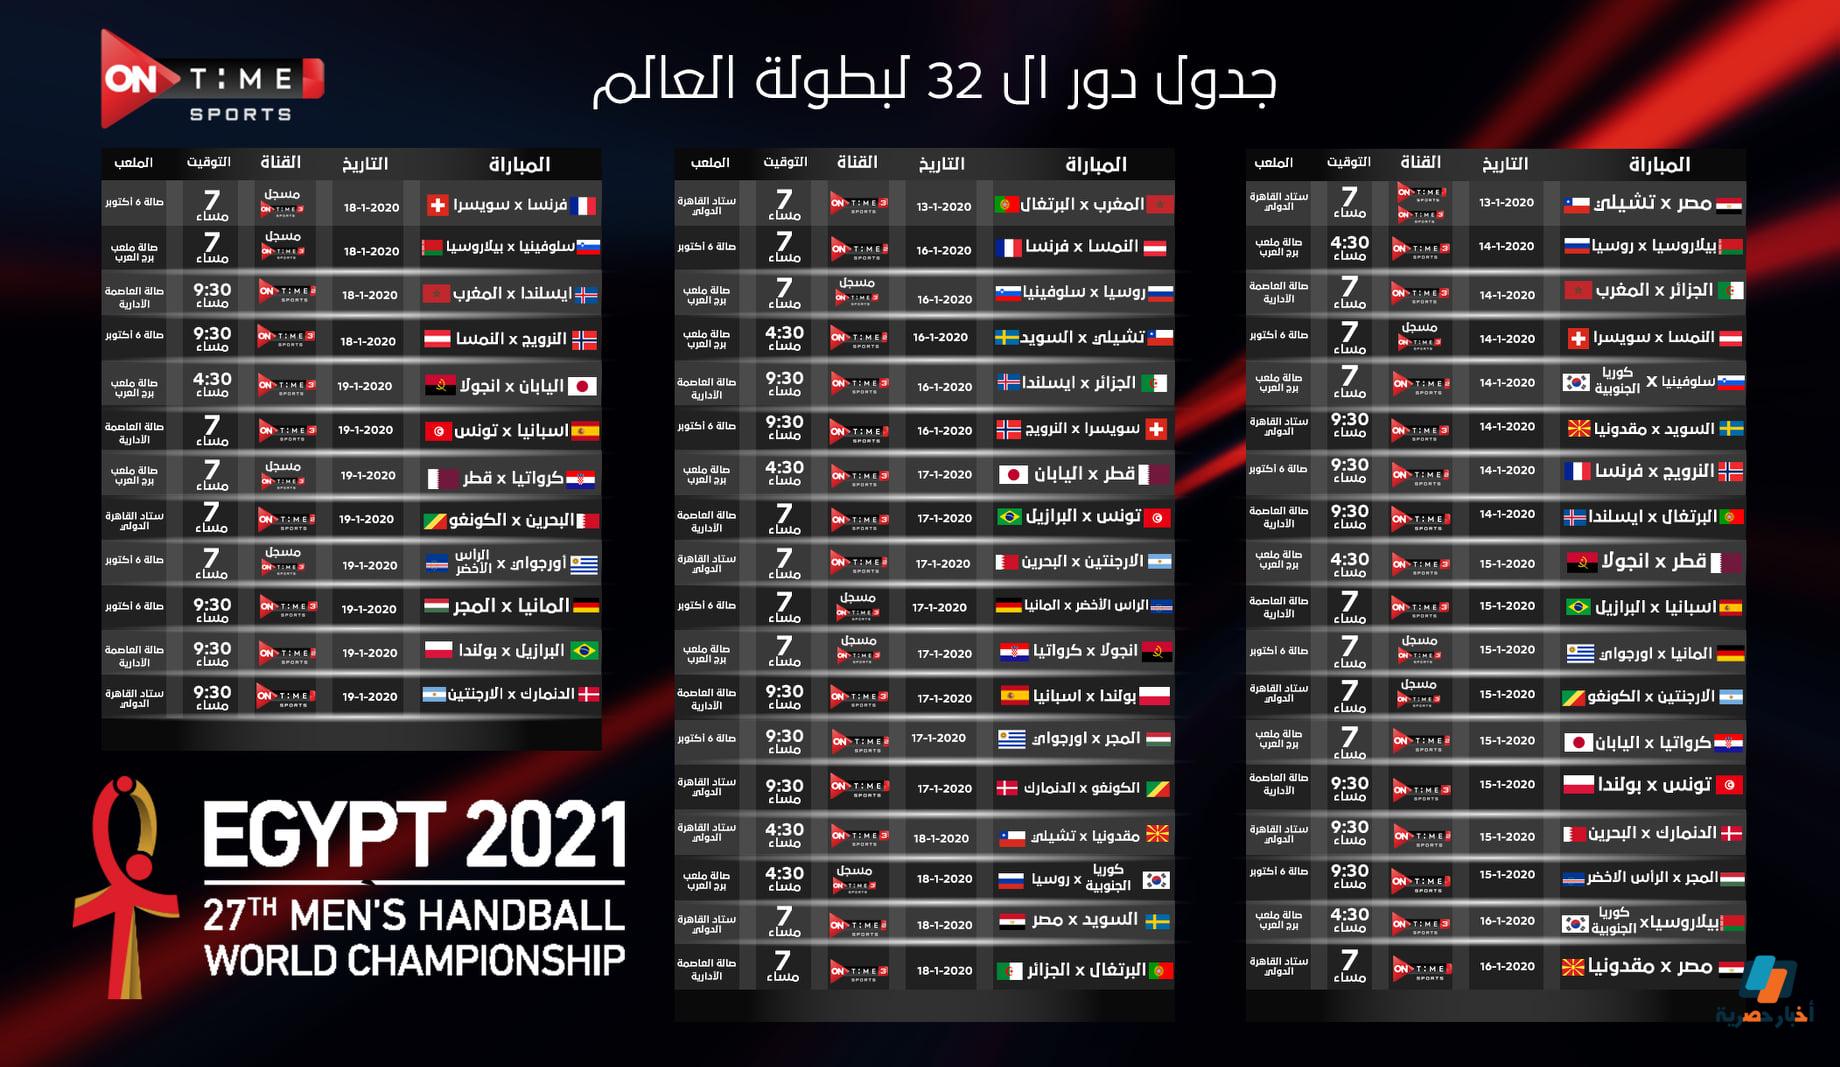 جدول مواعيد مباريات كأس العالم لكرة اليد 2021 مونديال مصر جدول مباريات كأس العالم